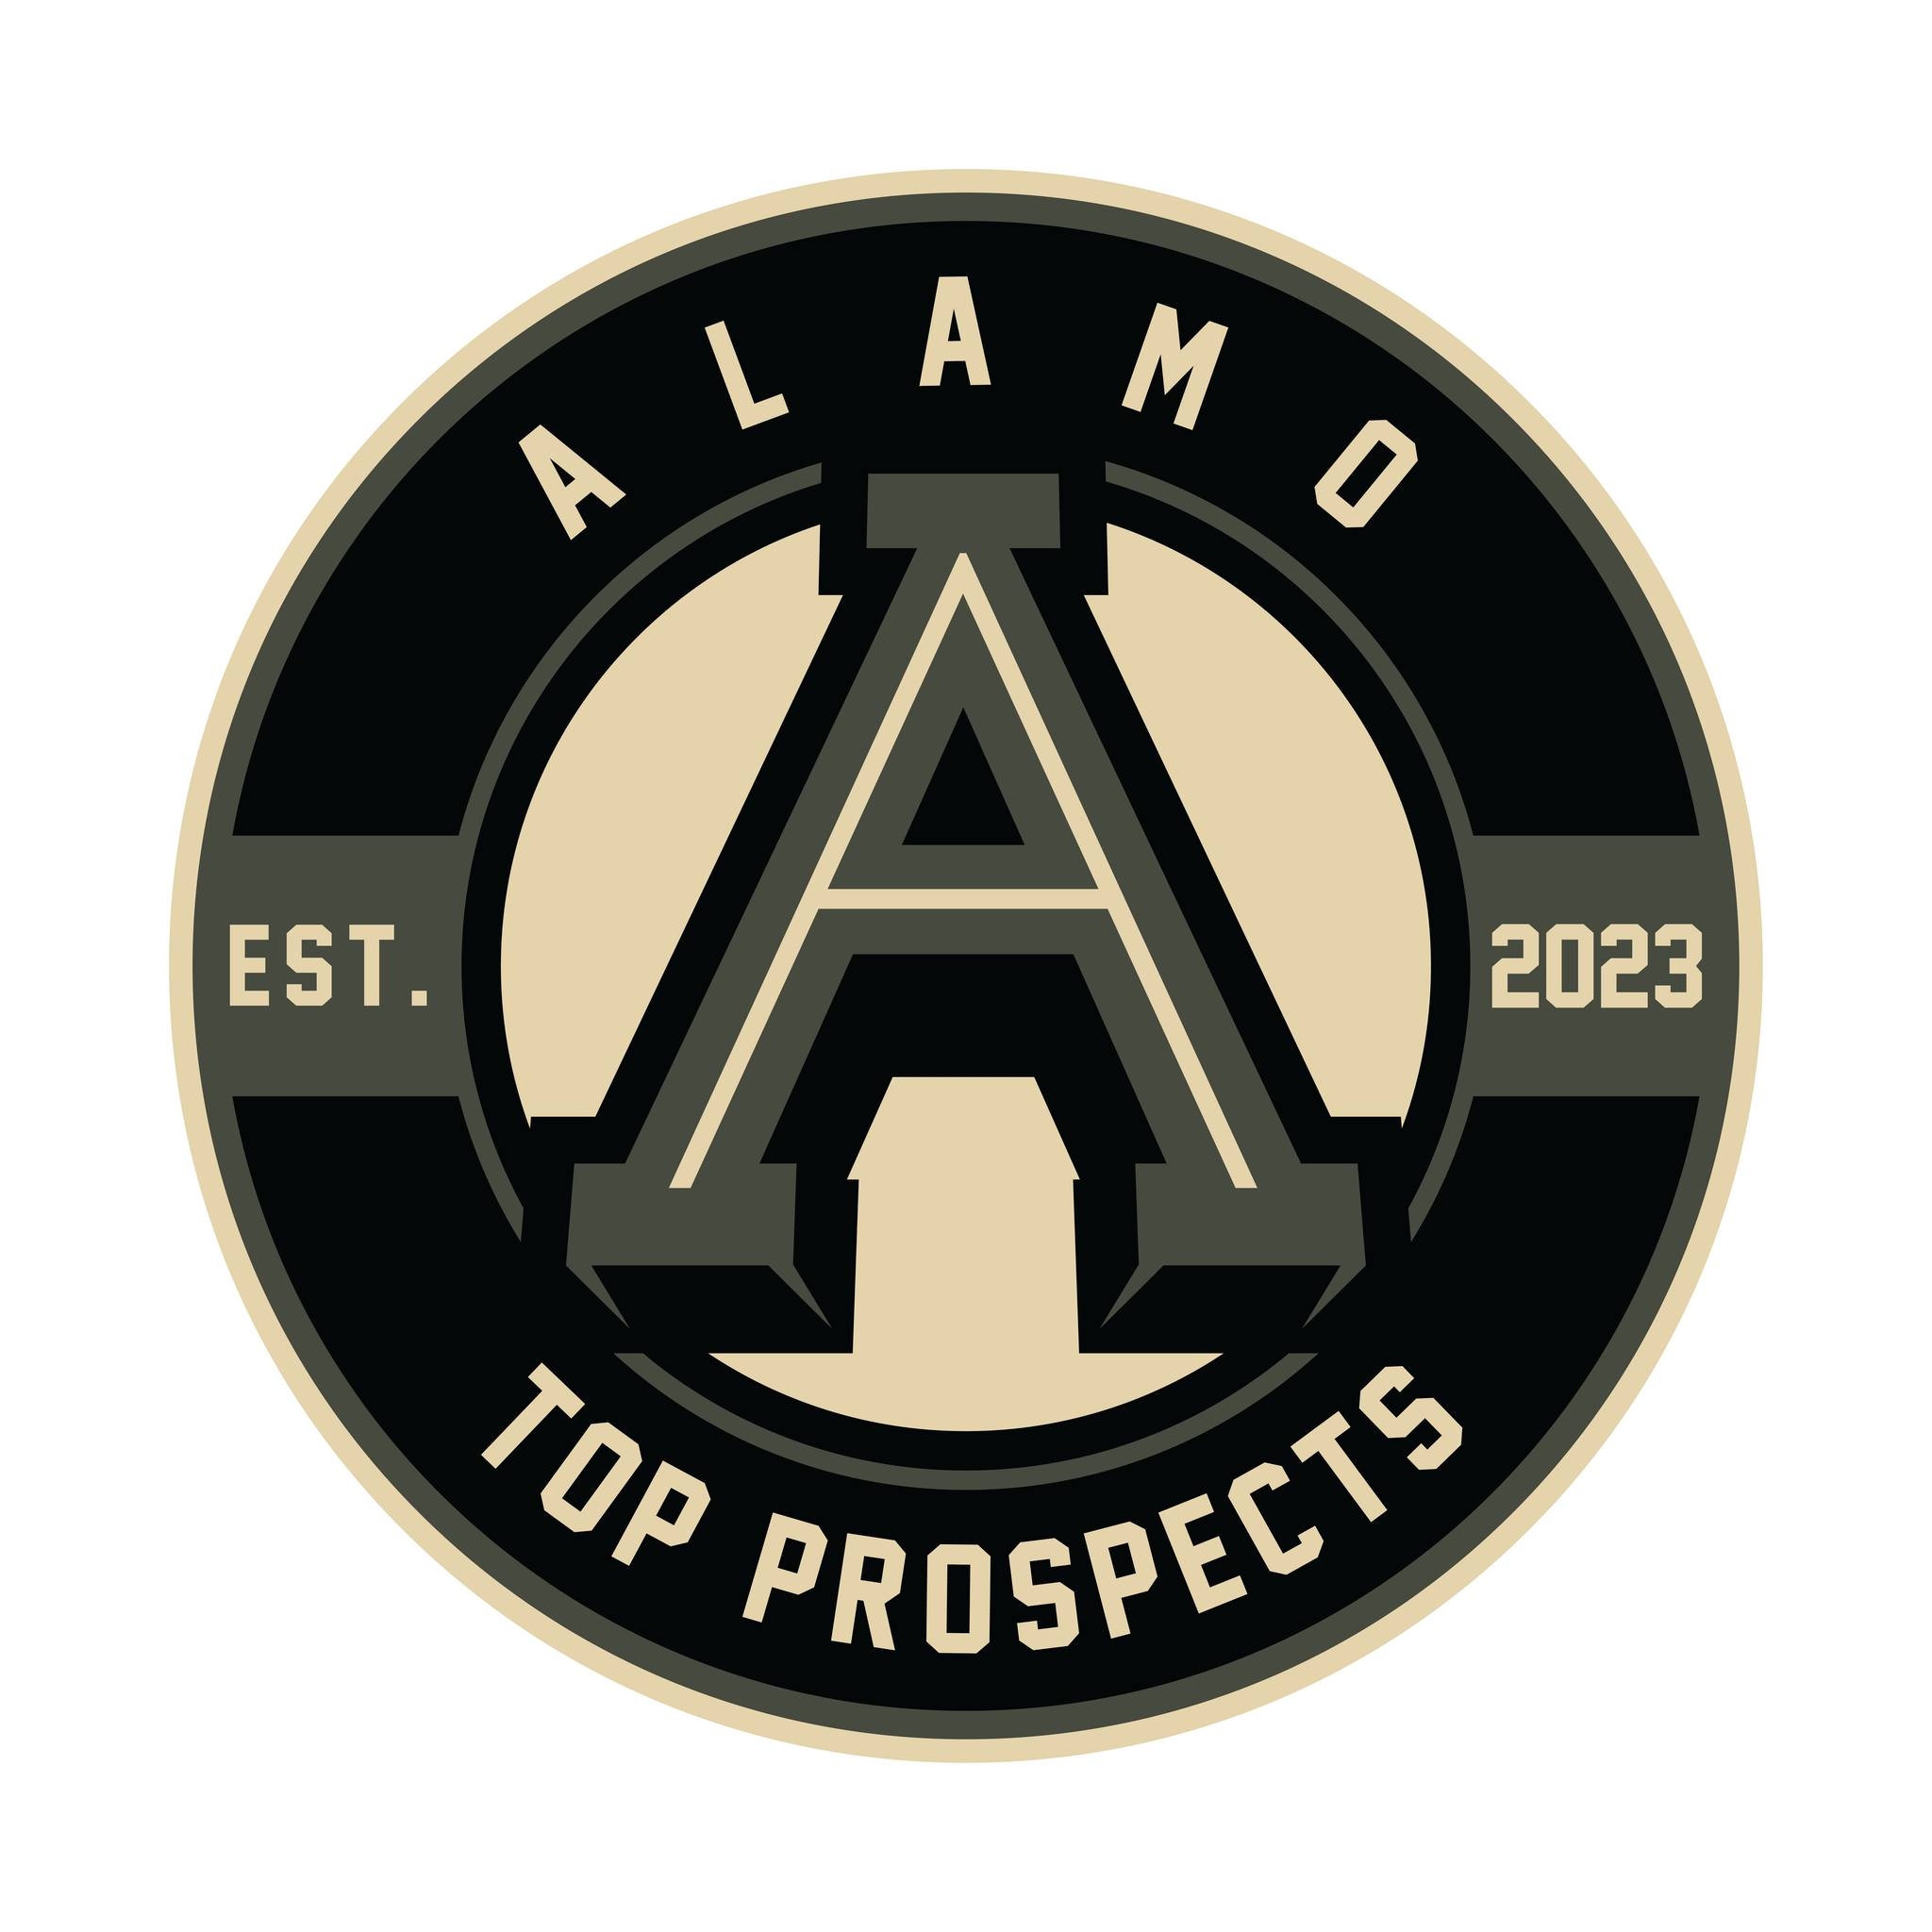 AlamoTopProspects